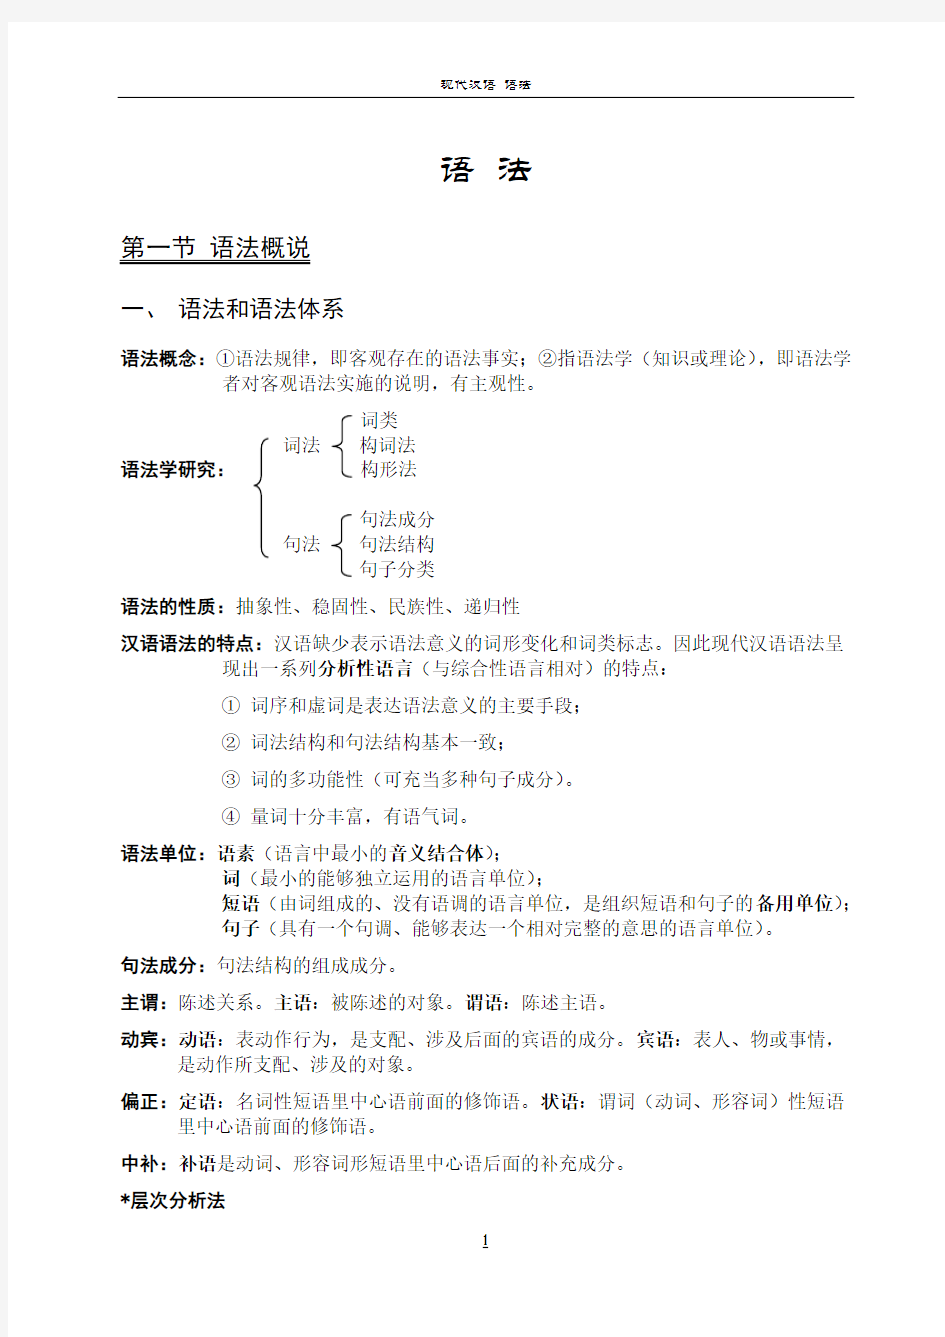 现代汉语知识梳理-语法篇